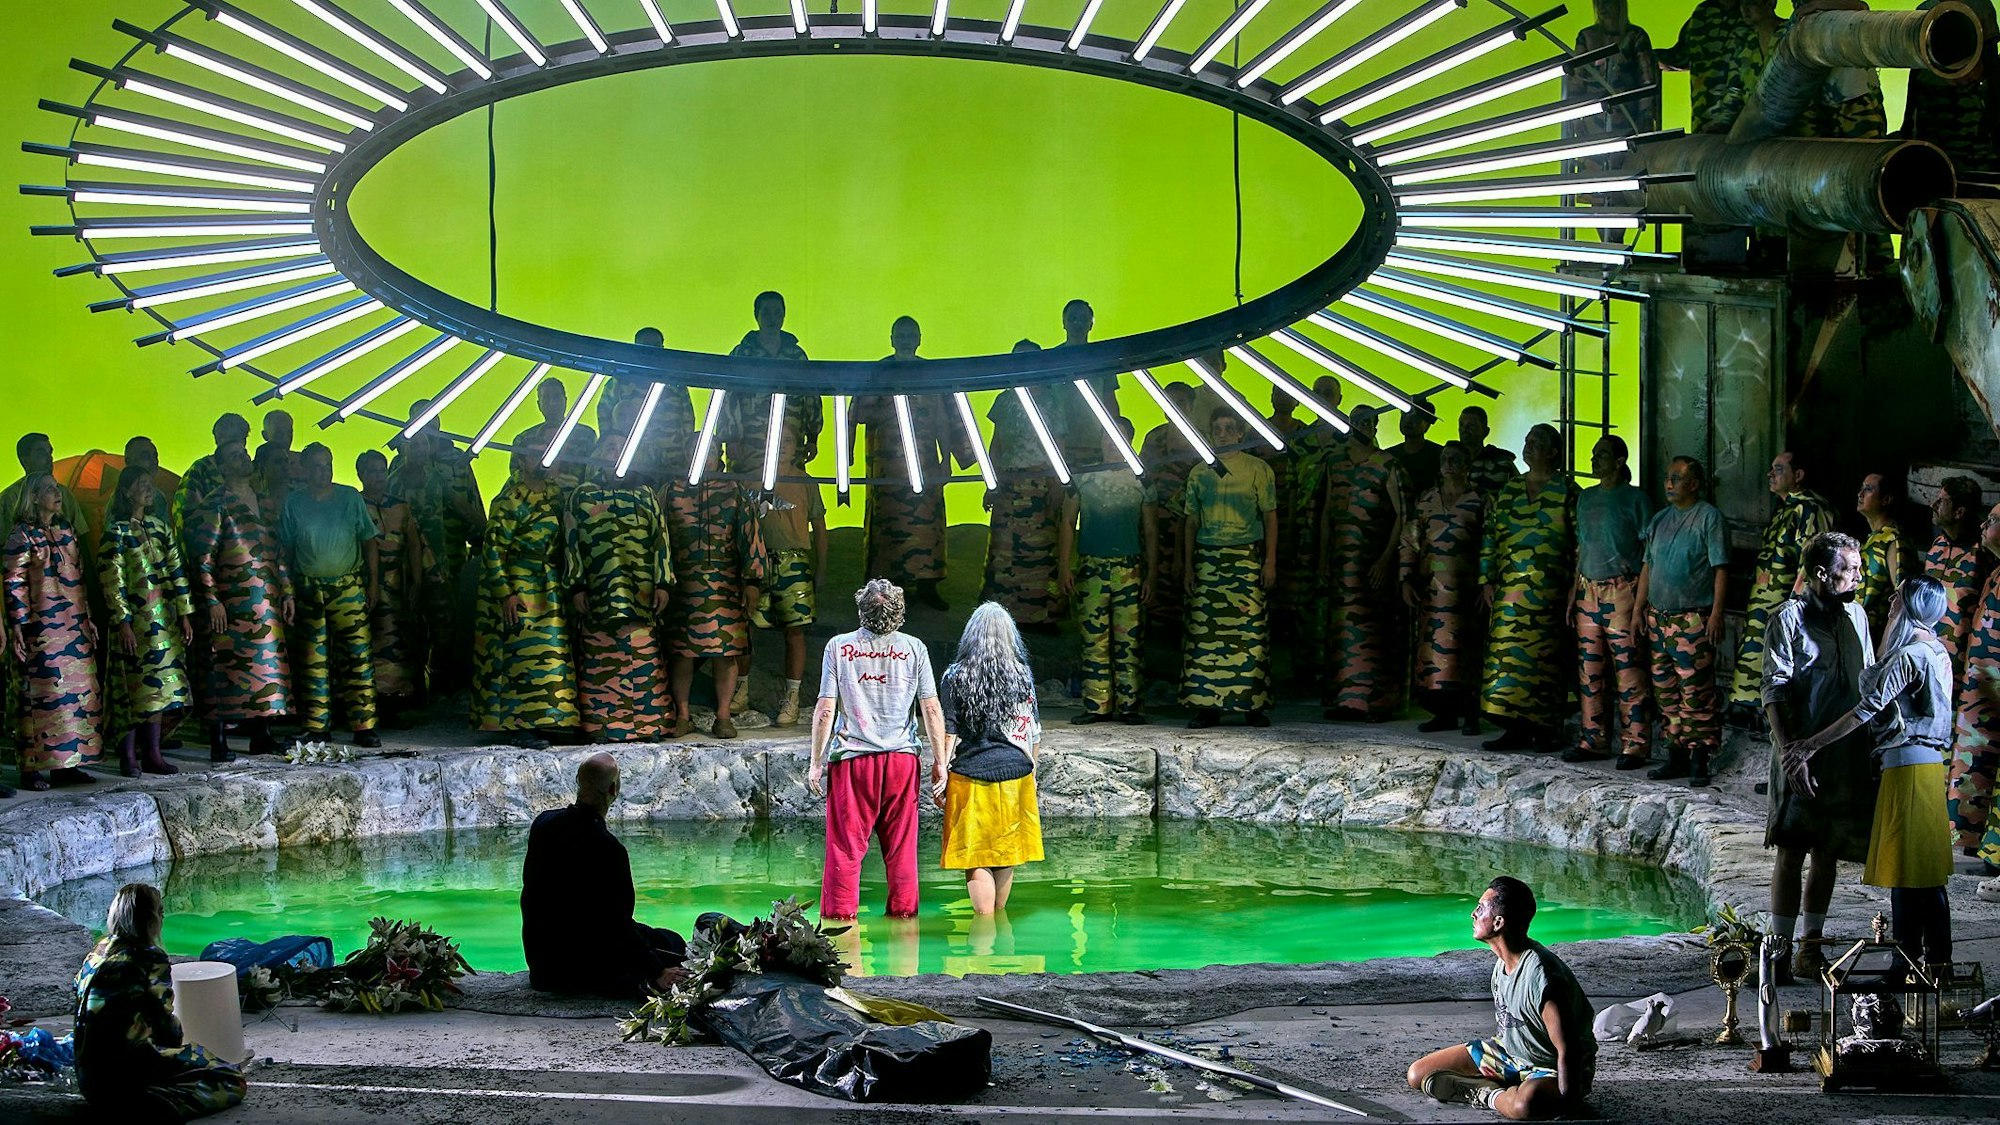 Auf der Bühne stehen Parsifal und Kundry in einer Art Teich, über ihnen ein großer Kreis mit LED-Lampen. Um sie herum stehen zahlreiche Menschen.